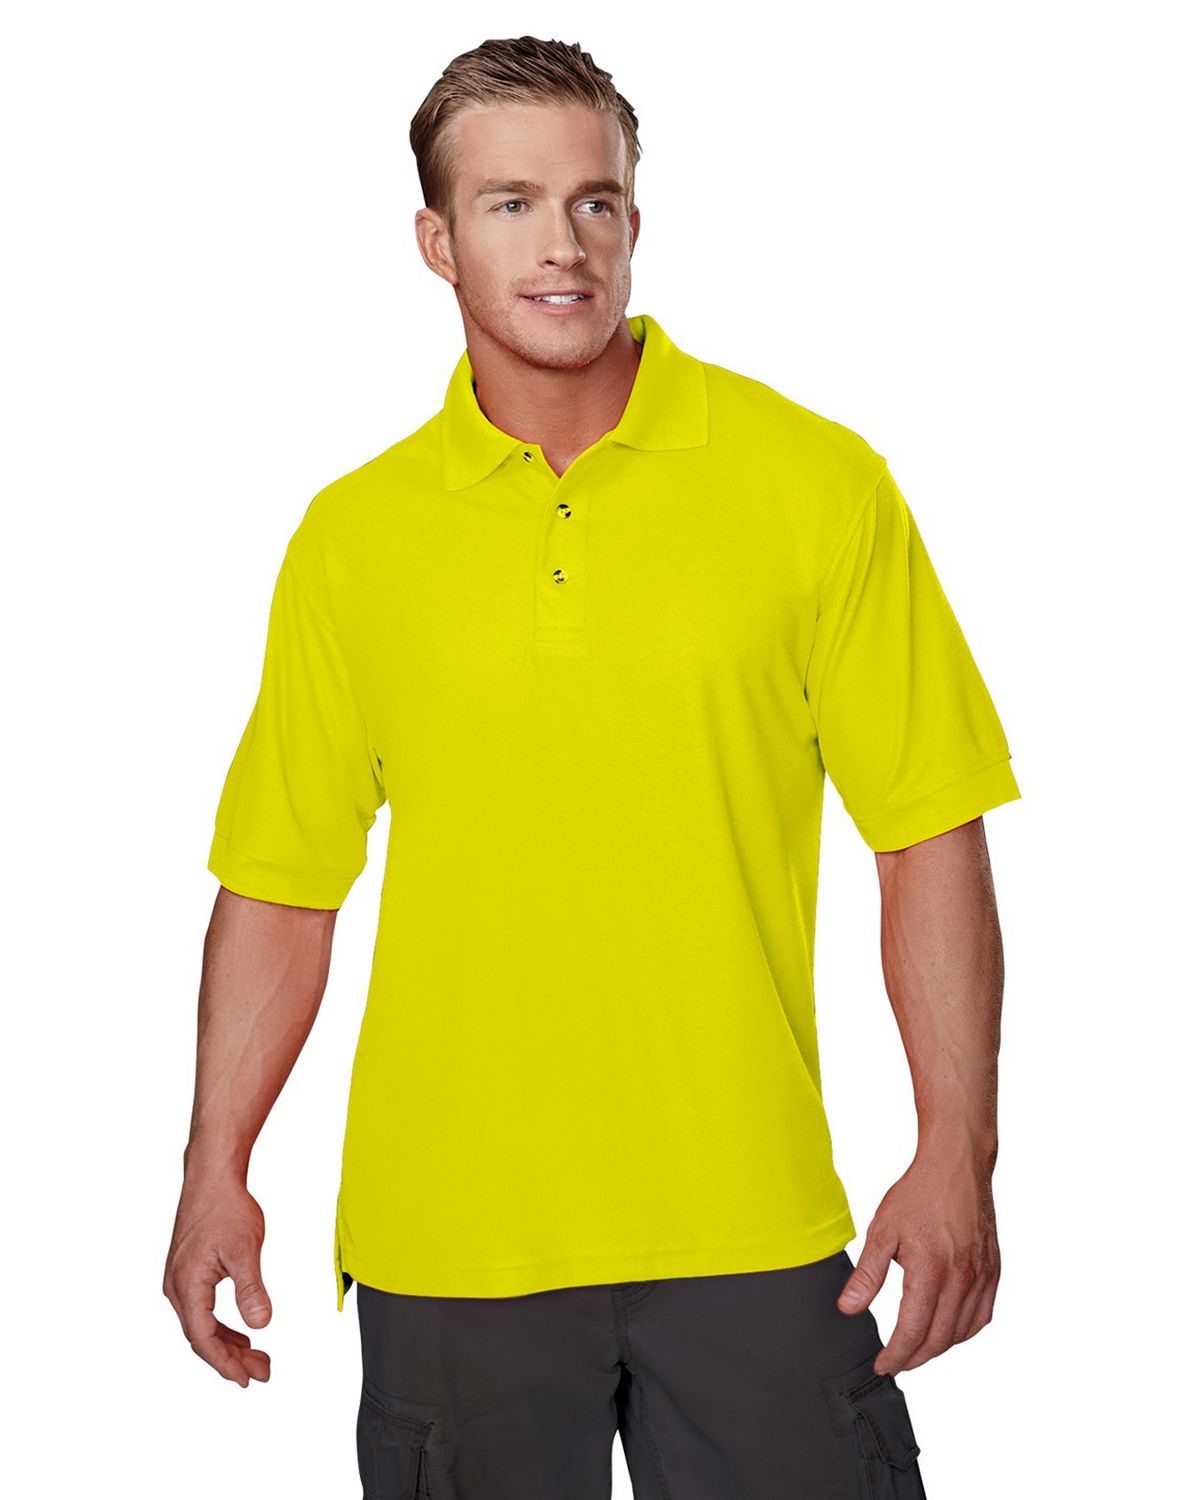 Tri-Mountain 100 Safeguard Poly Safety pique golf shirt